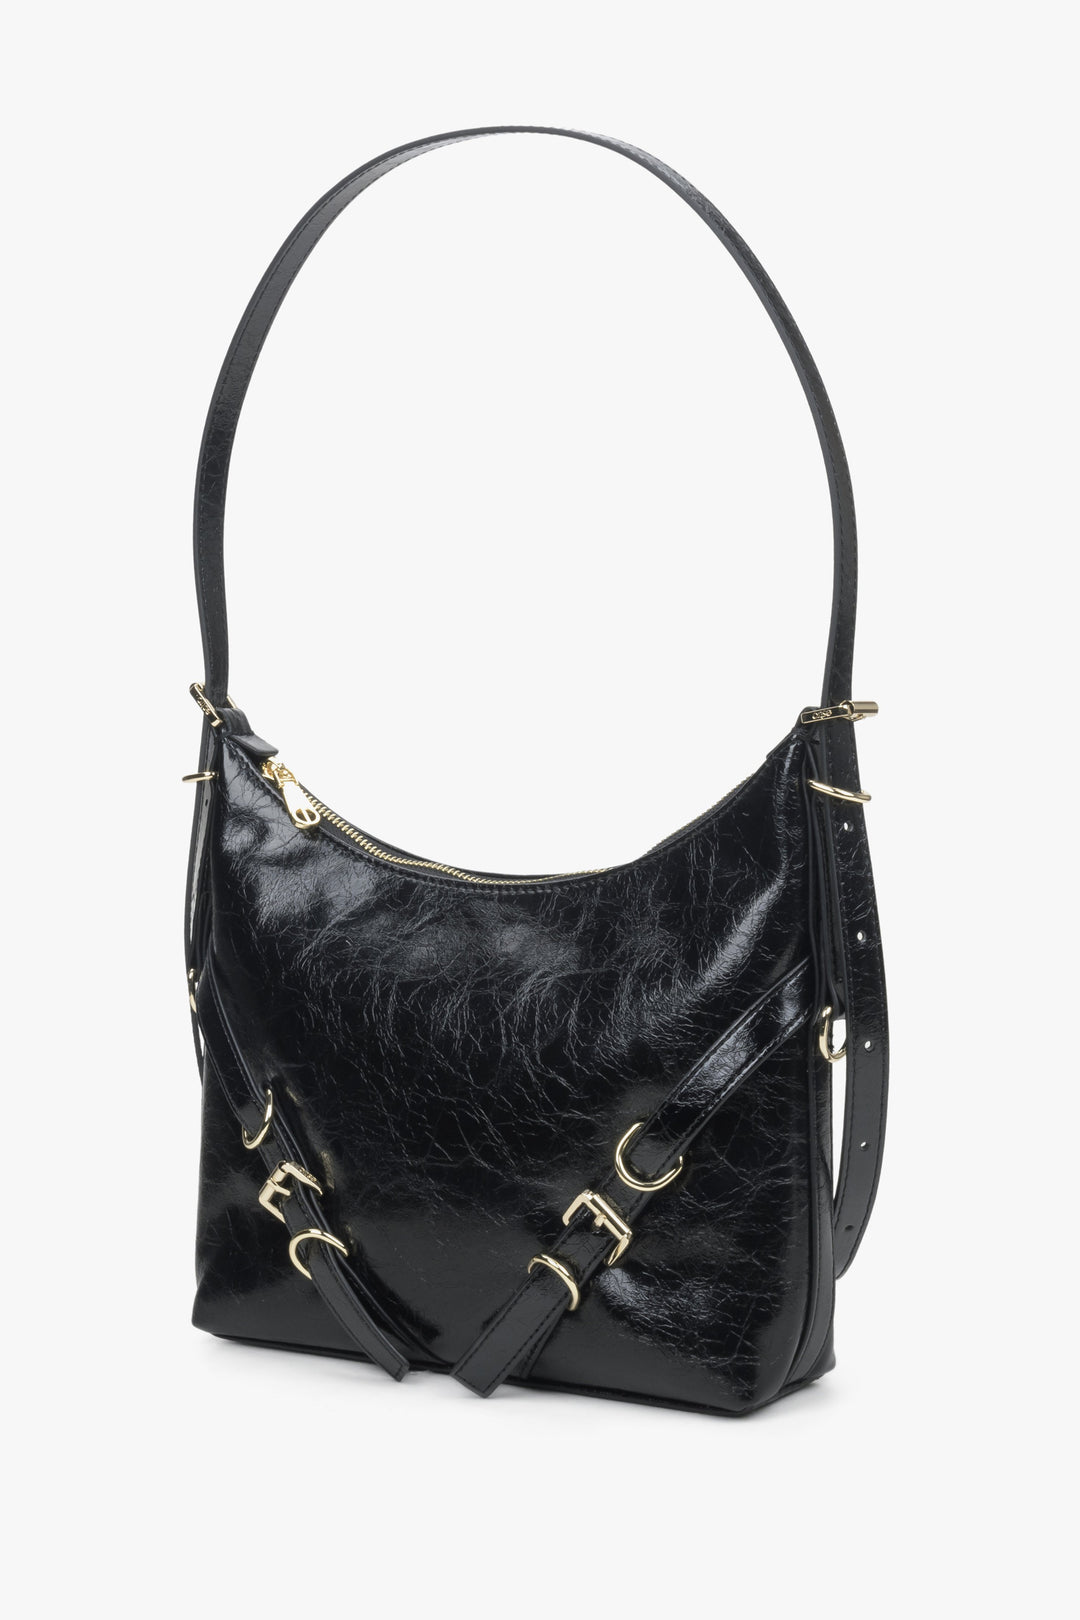 Women's black Estro leather handbag.